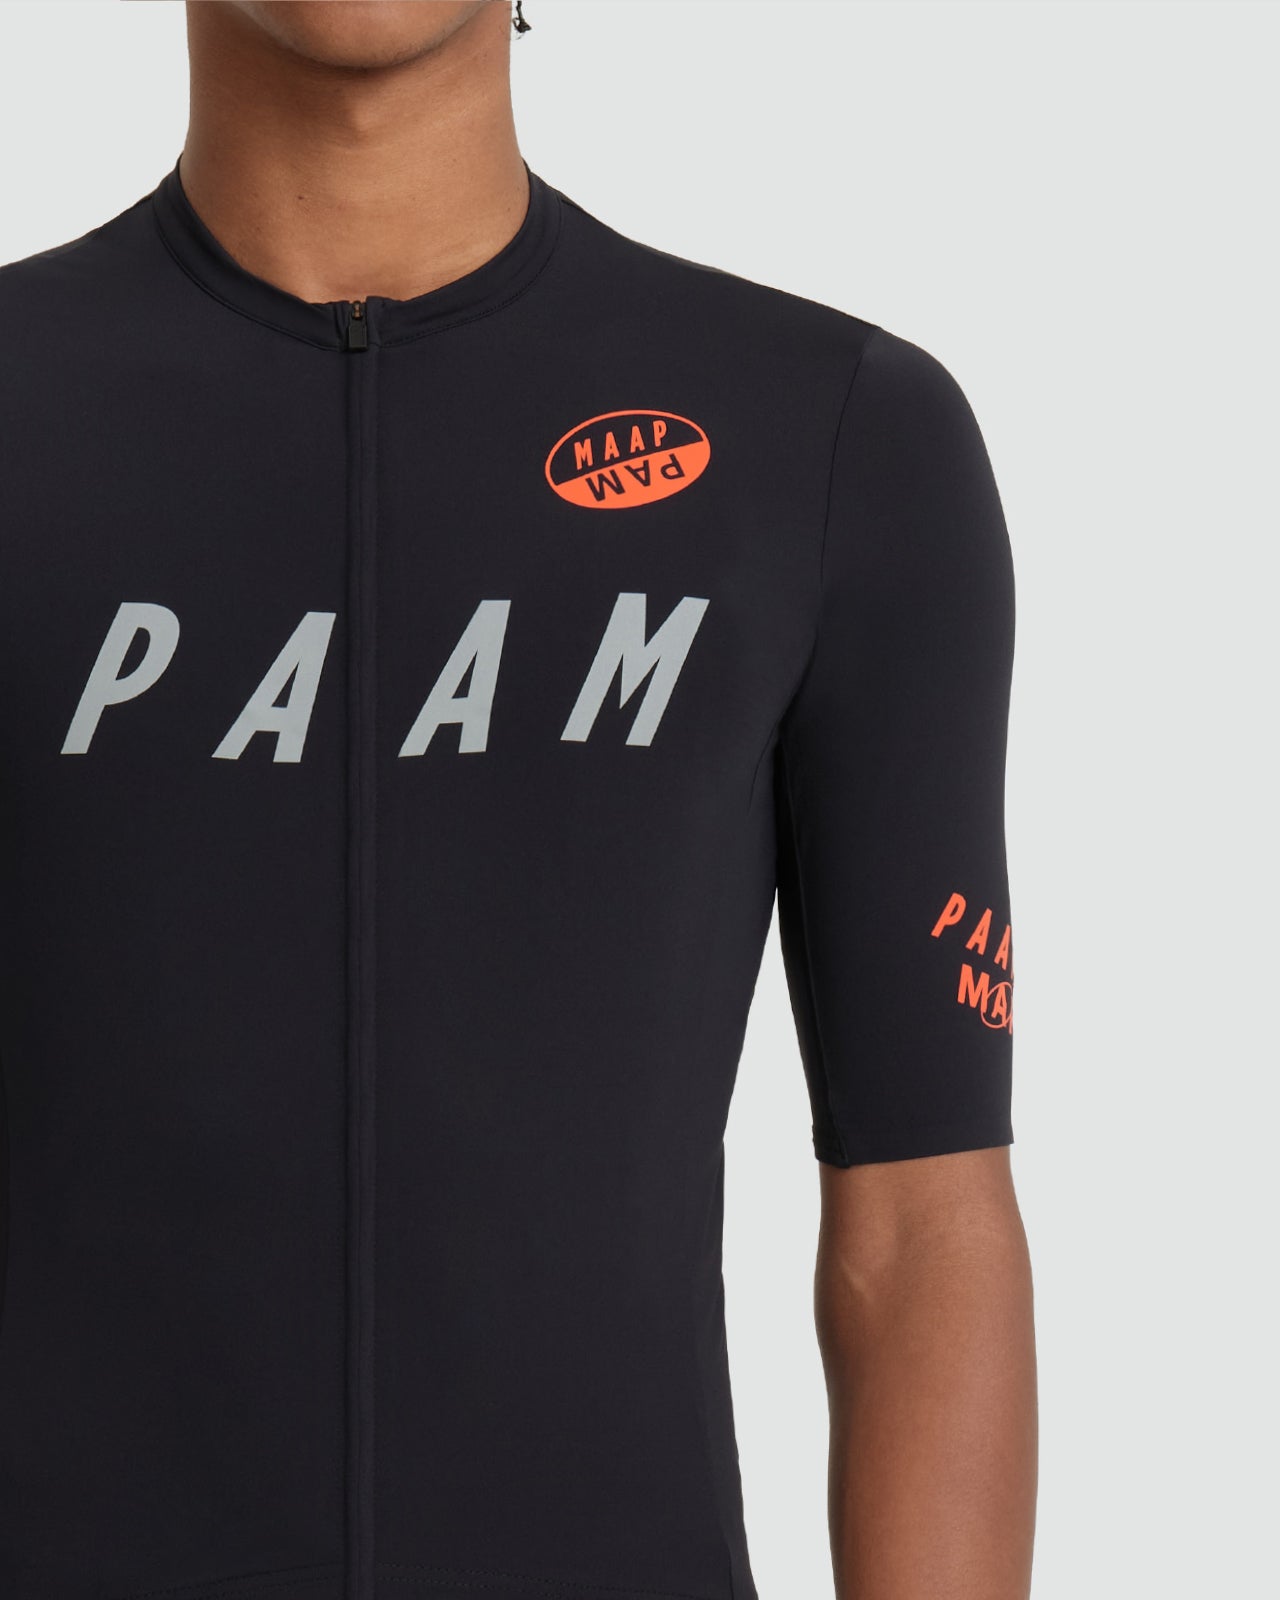 MAAP X PAM Team Jersey - MAAP Cycling Apparel